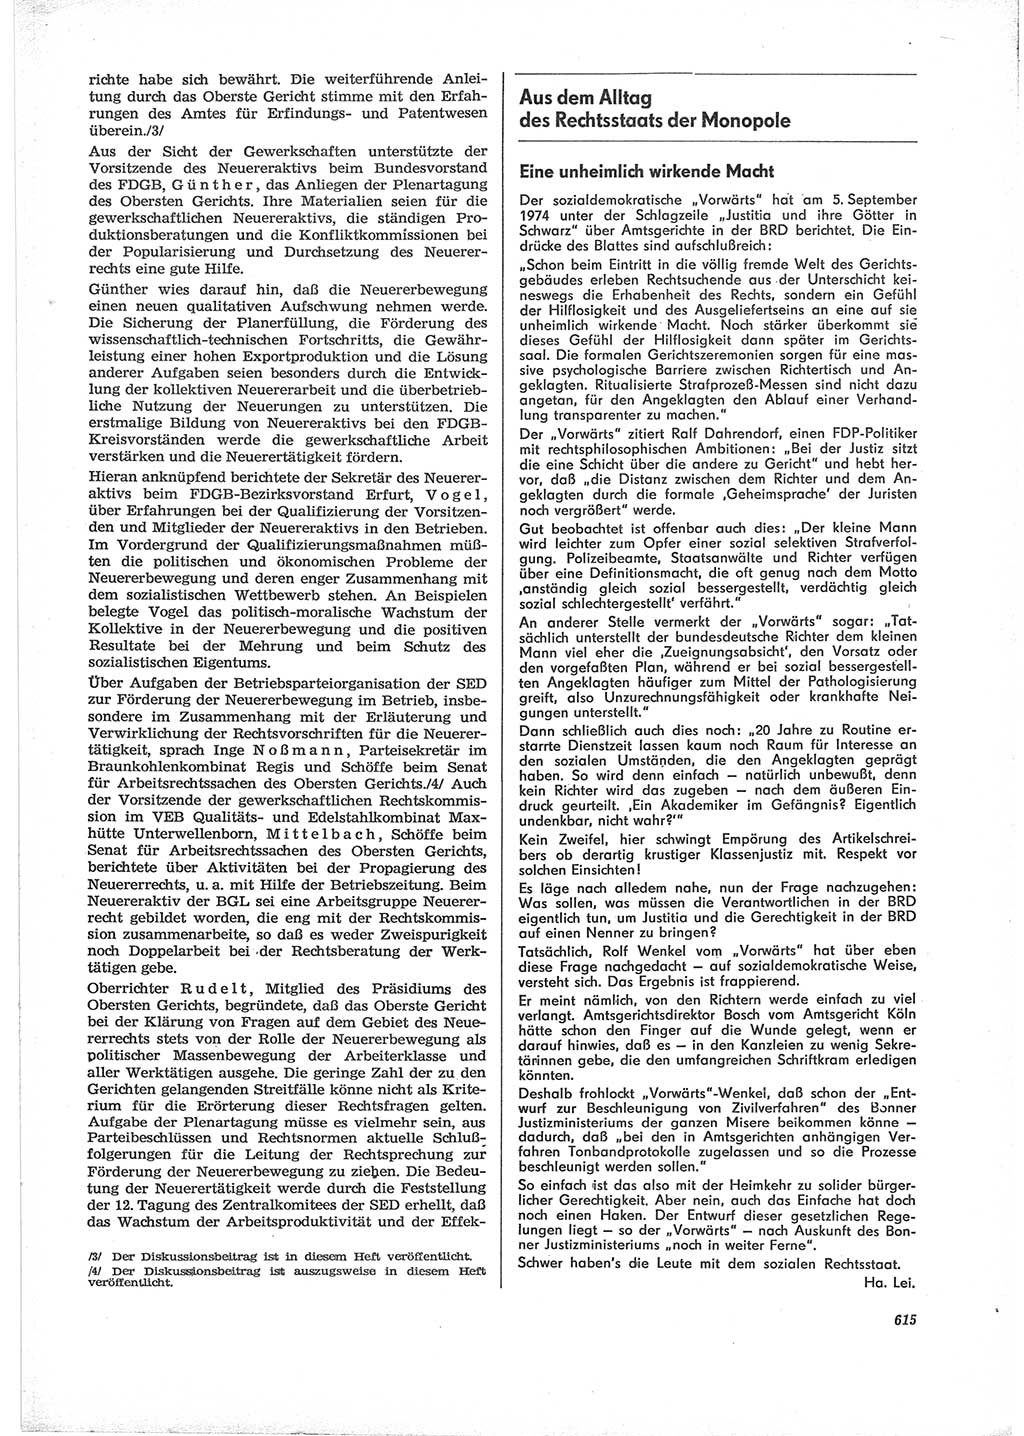 Neue Justiz (NJ), Zeitschrift für Recht und Rechtswissenschaft [Deutsche Demokratische Republik (DDR)], 28. Jahrgang 1974, Seite 615 (NJ DDR 1974, S. 615)